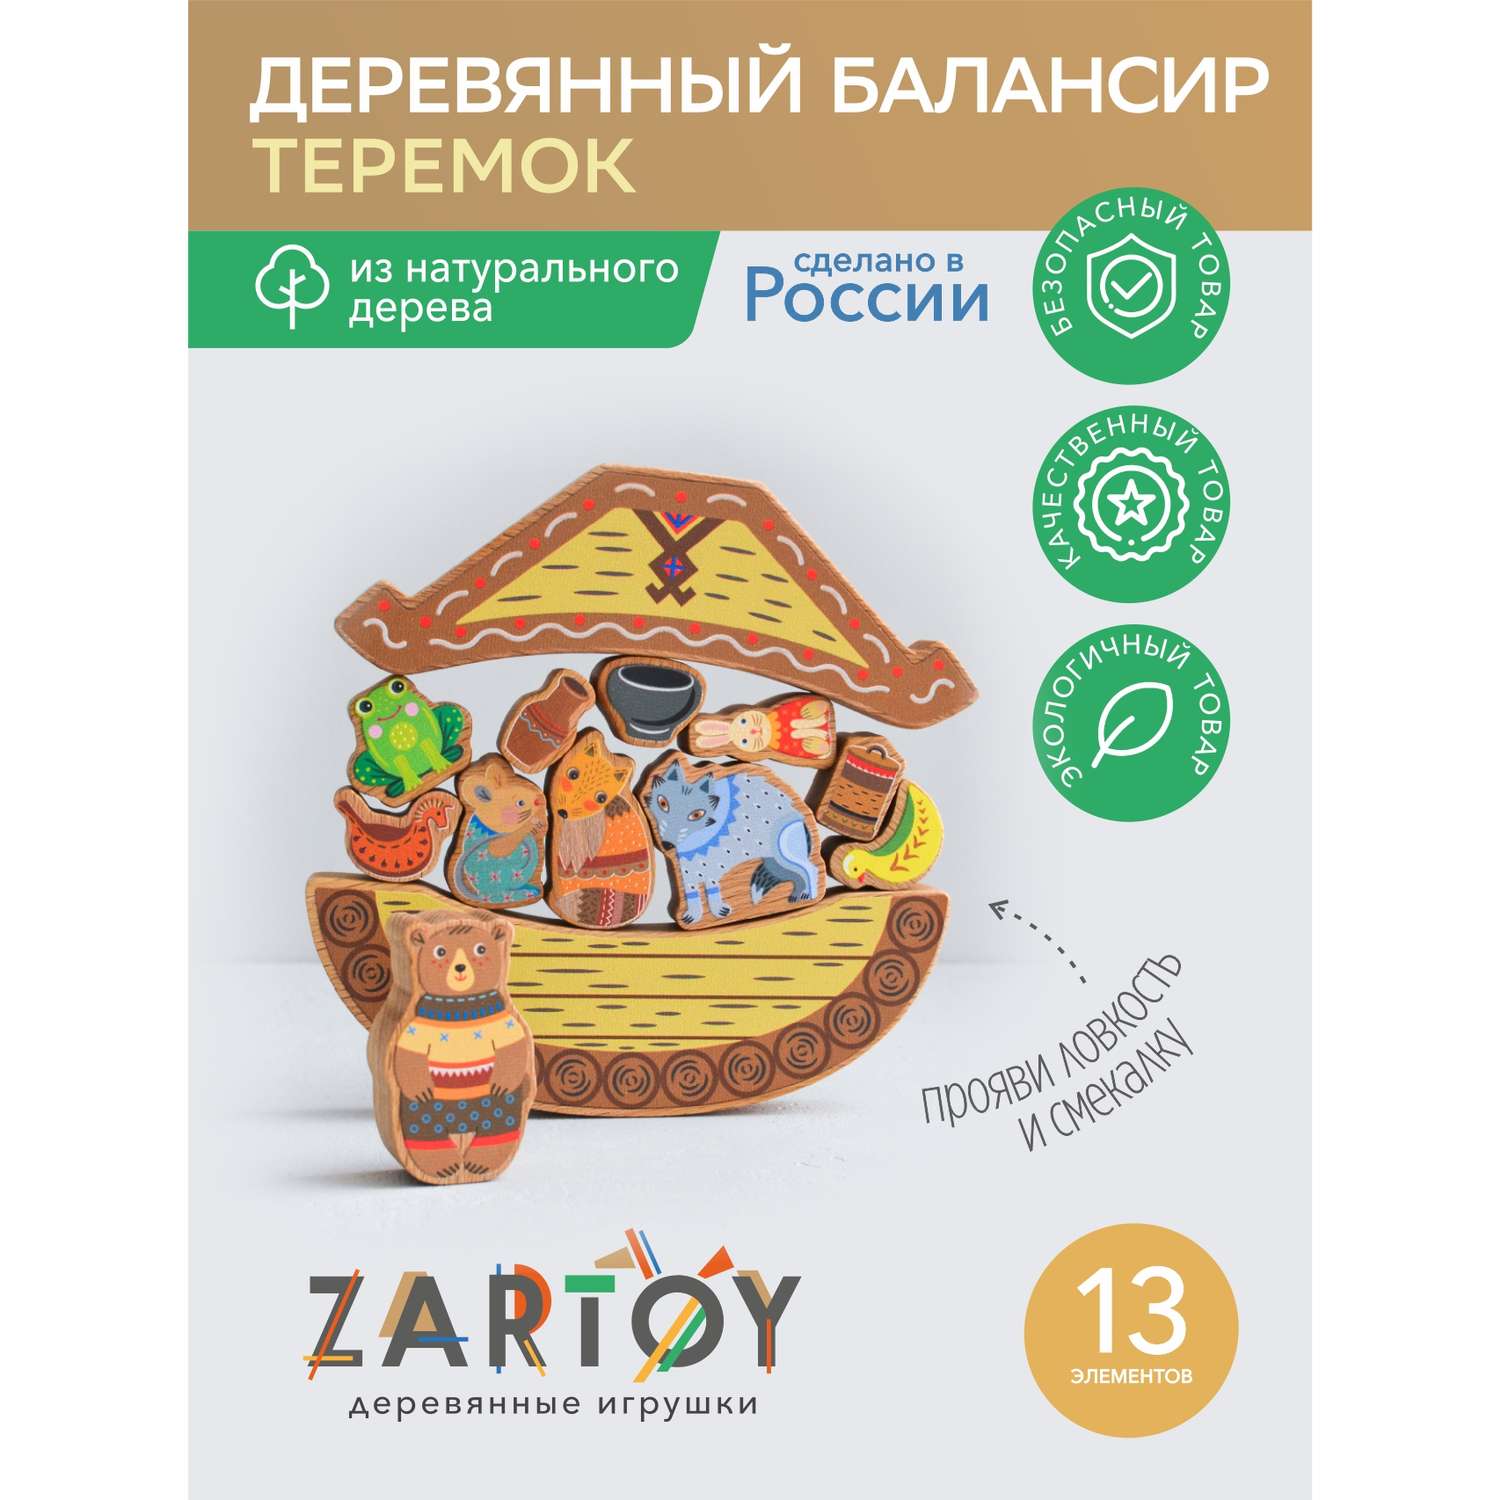 Балансир для детей Zartoy Теремок 13 деревянных фигурок кукольный театр сказка - фото 2